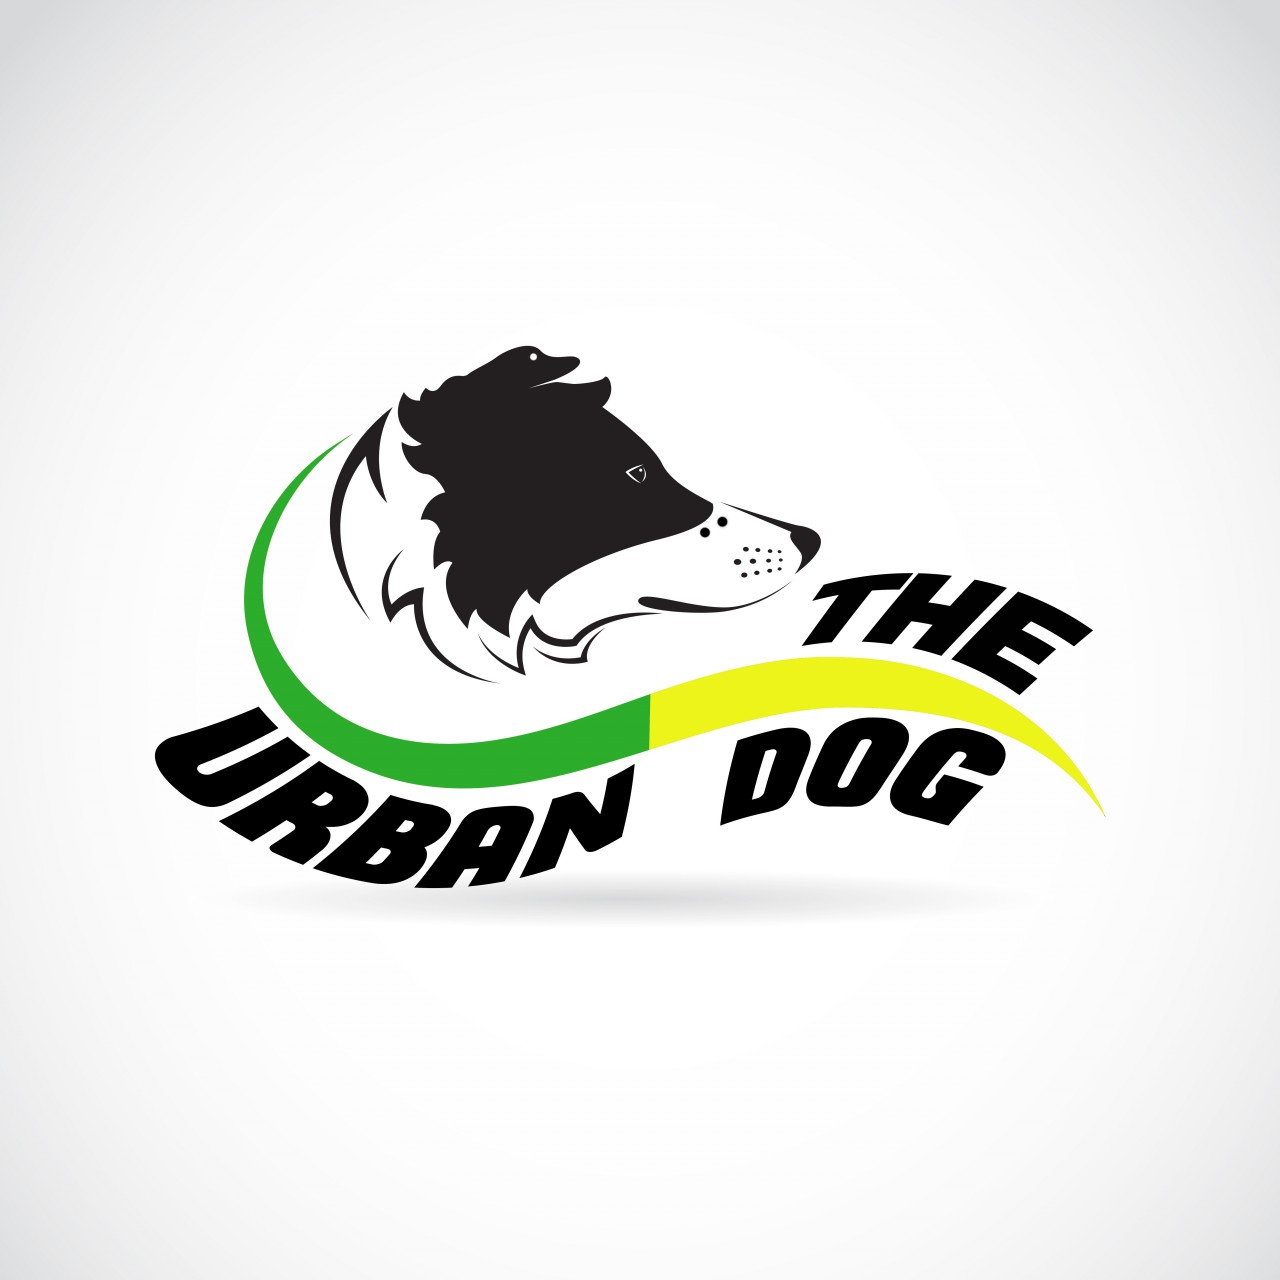 THE URBAN DOG 